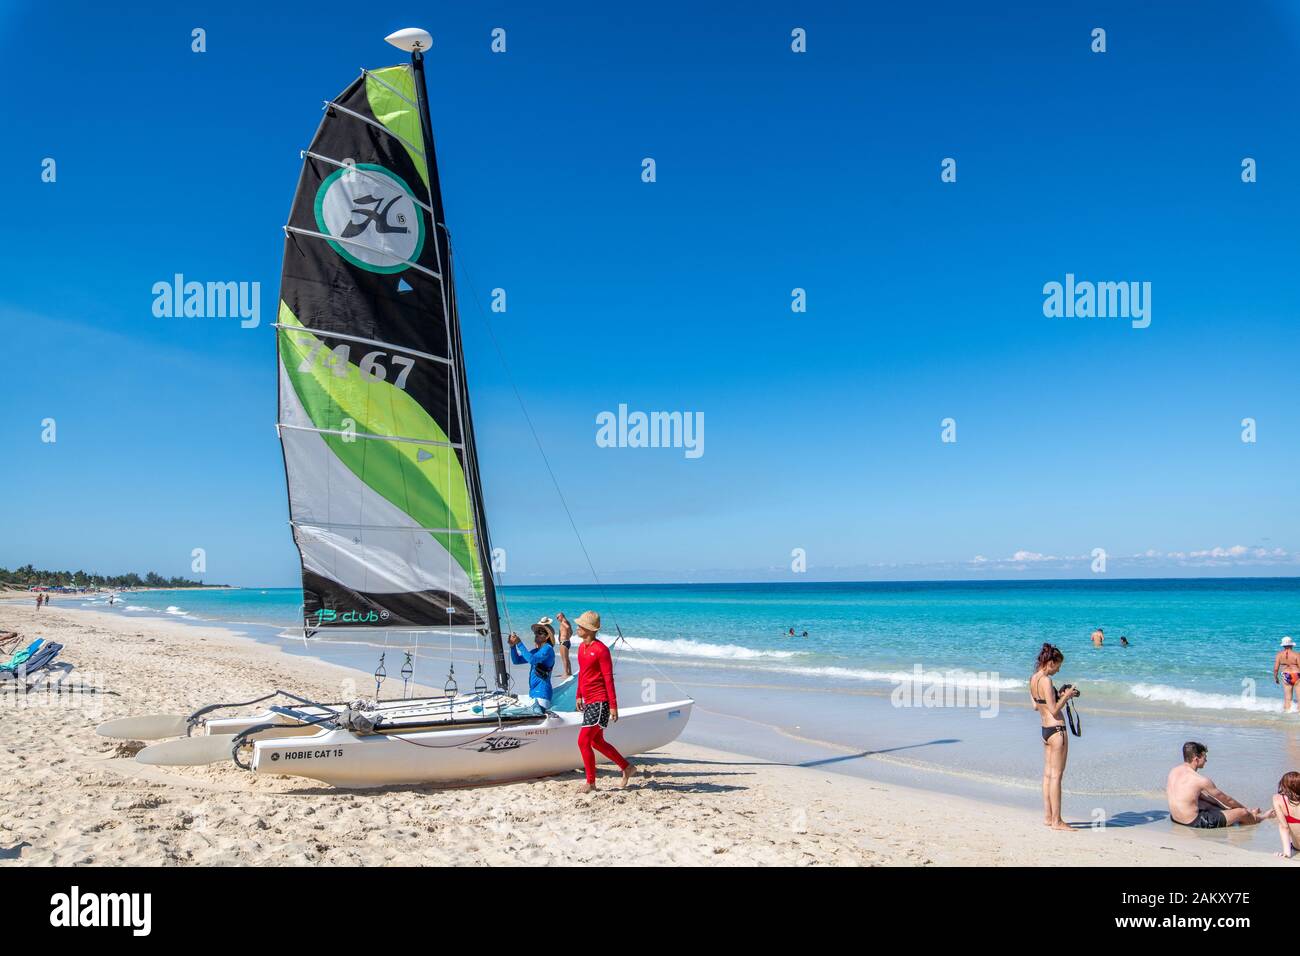 Einen kleinen Katamaran Vorbereitung von Santa Maria del Mar Beach, Havanna, Kuba aufgerufen werden kann. Stockfoto